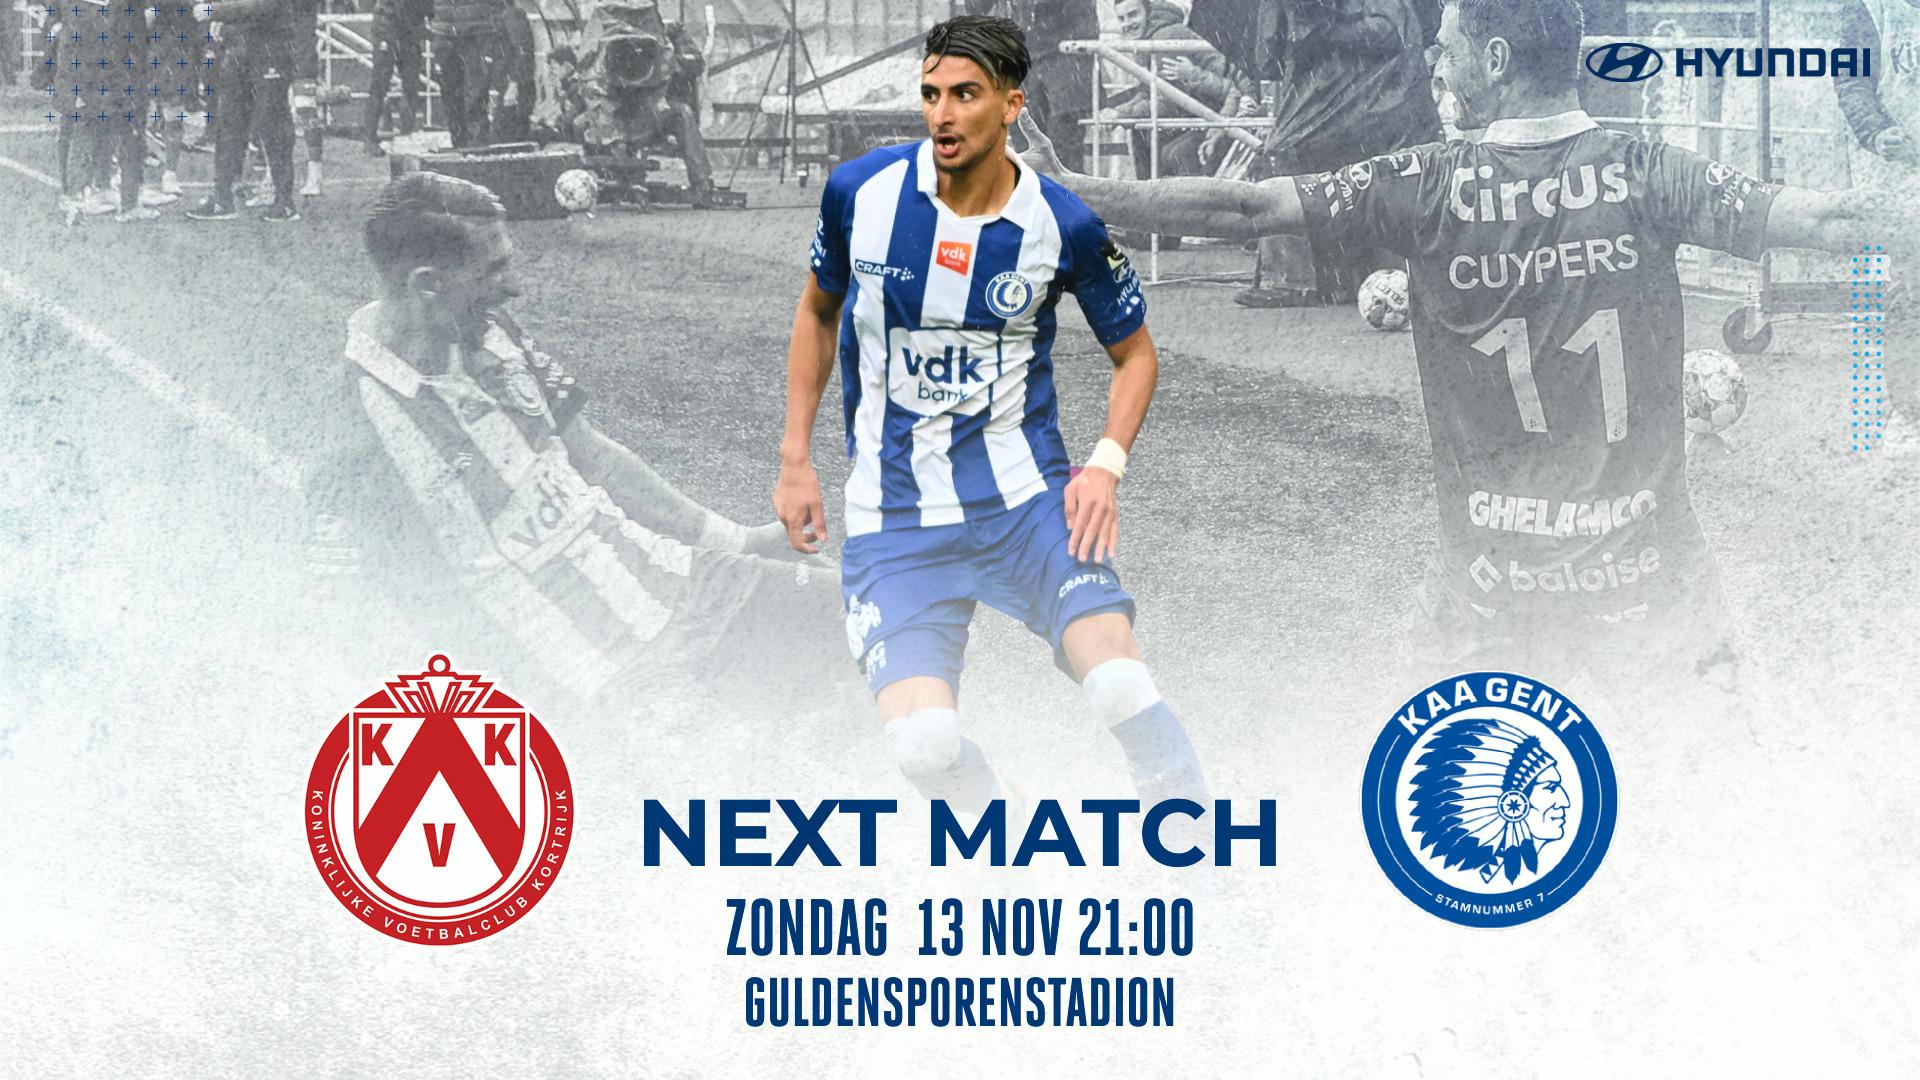 Next Match: KVKortrijk - KAA Gent